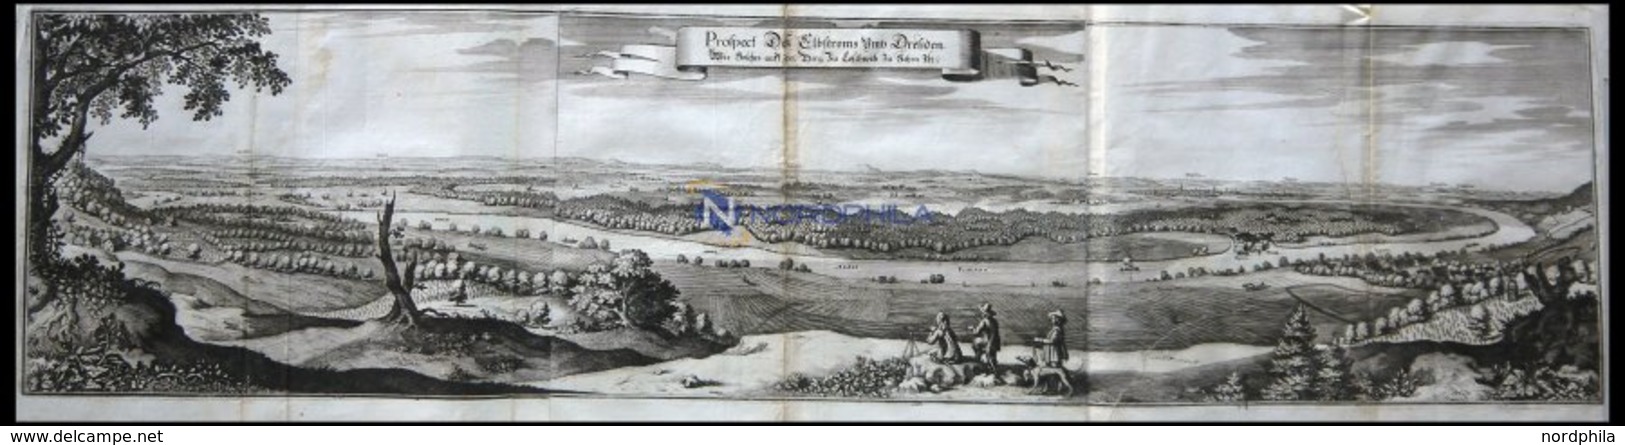 DRESDEN, Elbstrom Um Dresden, Kupferstich Von Merian Um 1645, Leichte Mängel - Lithographien